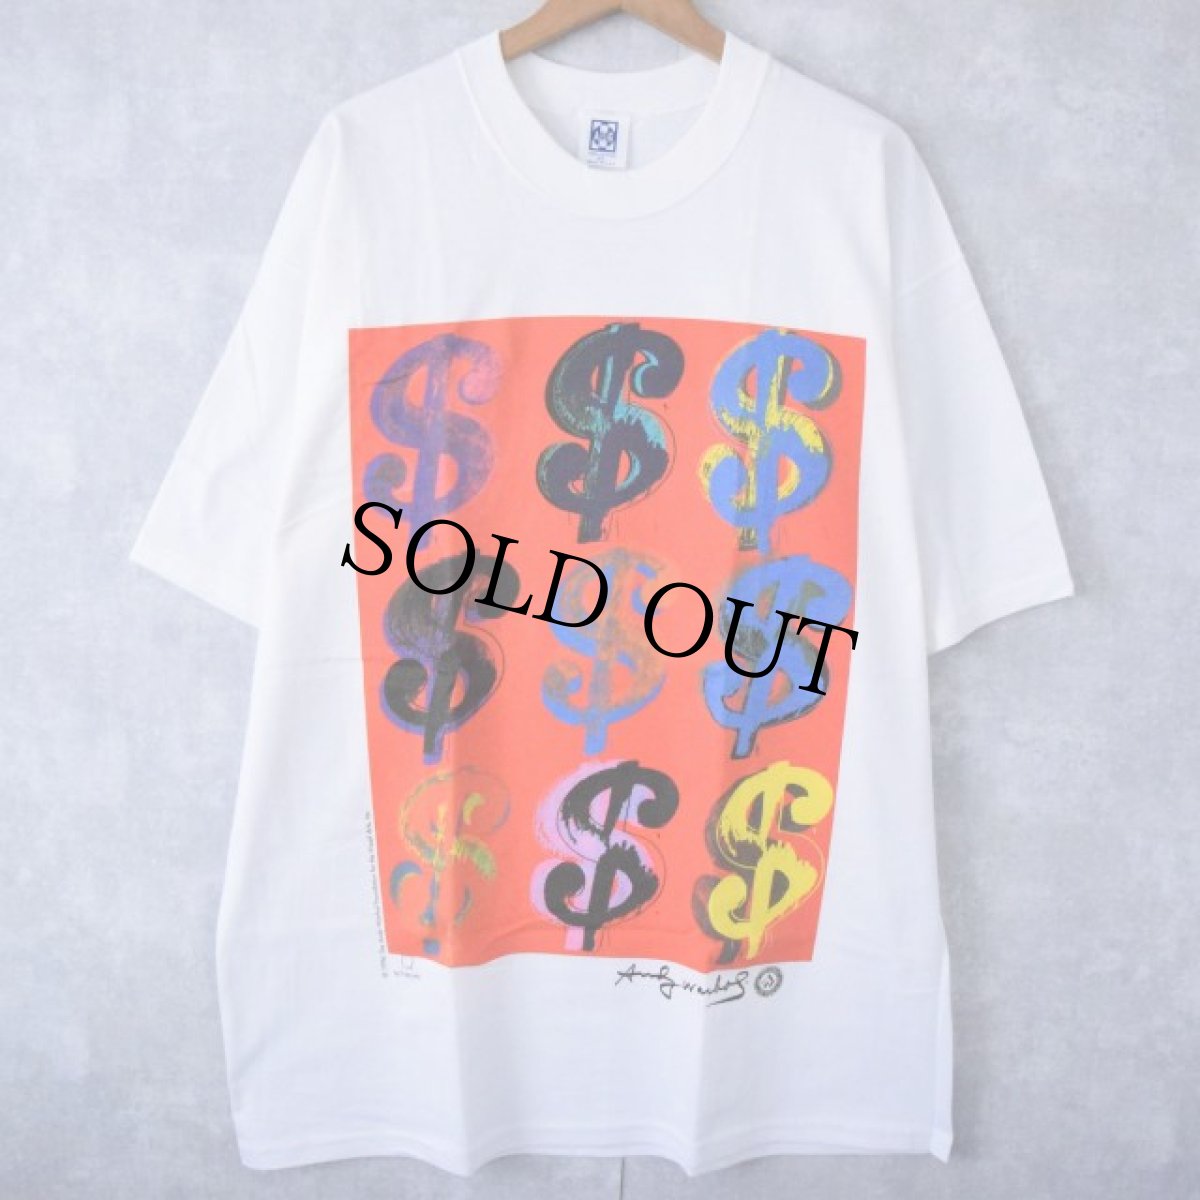 画像1: 90's ANDY WARHOL USA製 “Dollar Sign” アートプリントTシャツ DEADSTOCK XL  (1)